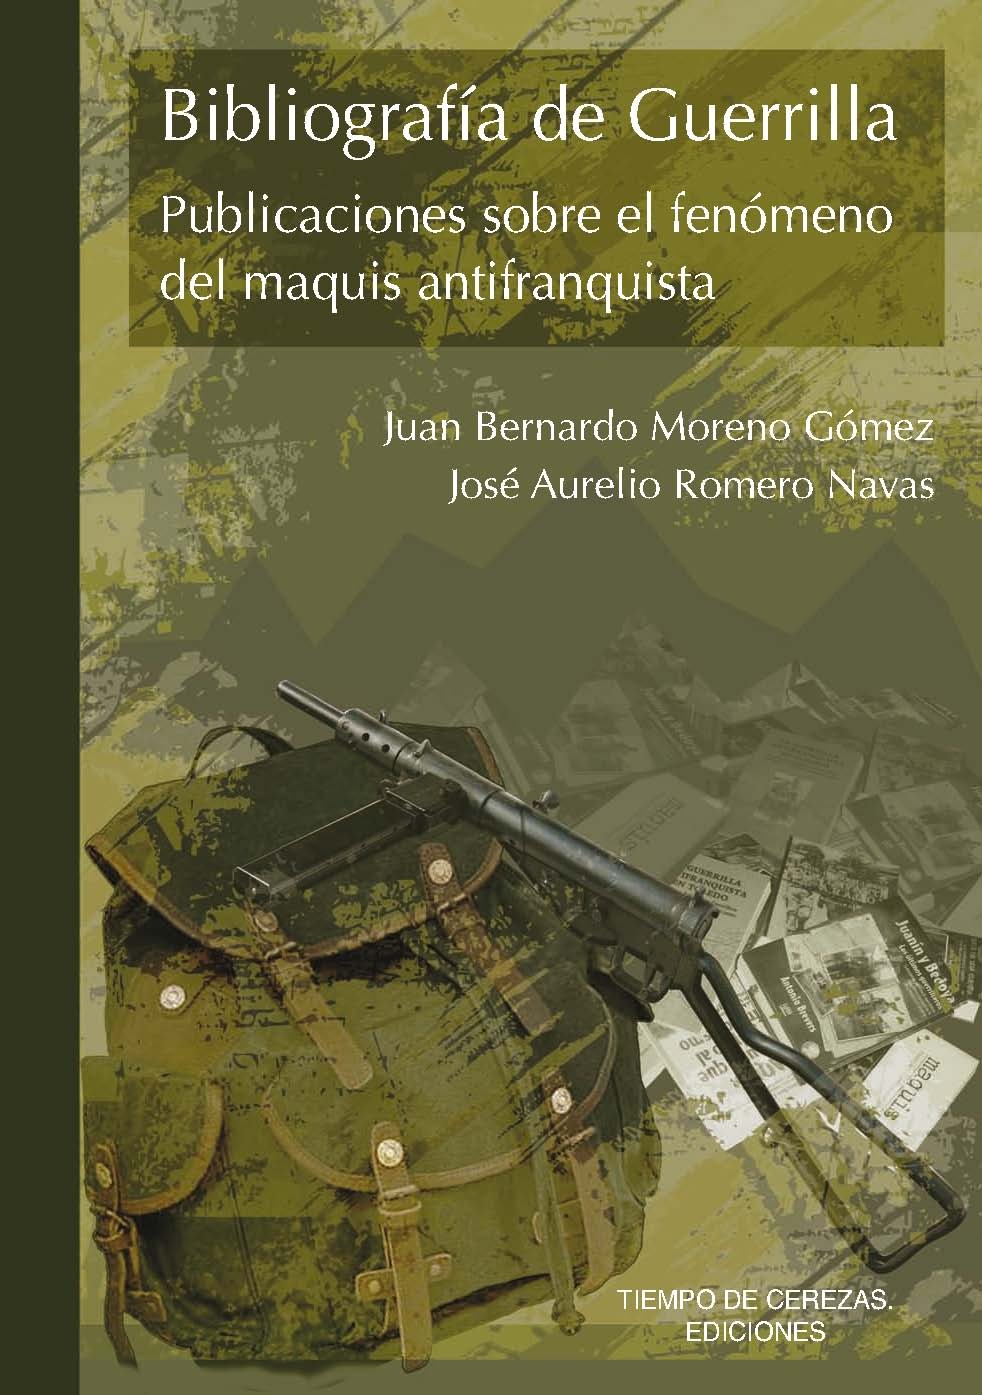 Imagen de portada del libro Bibliografía de guerrilla